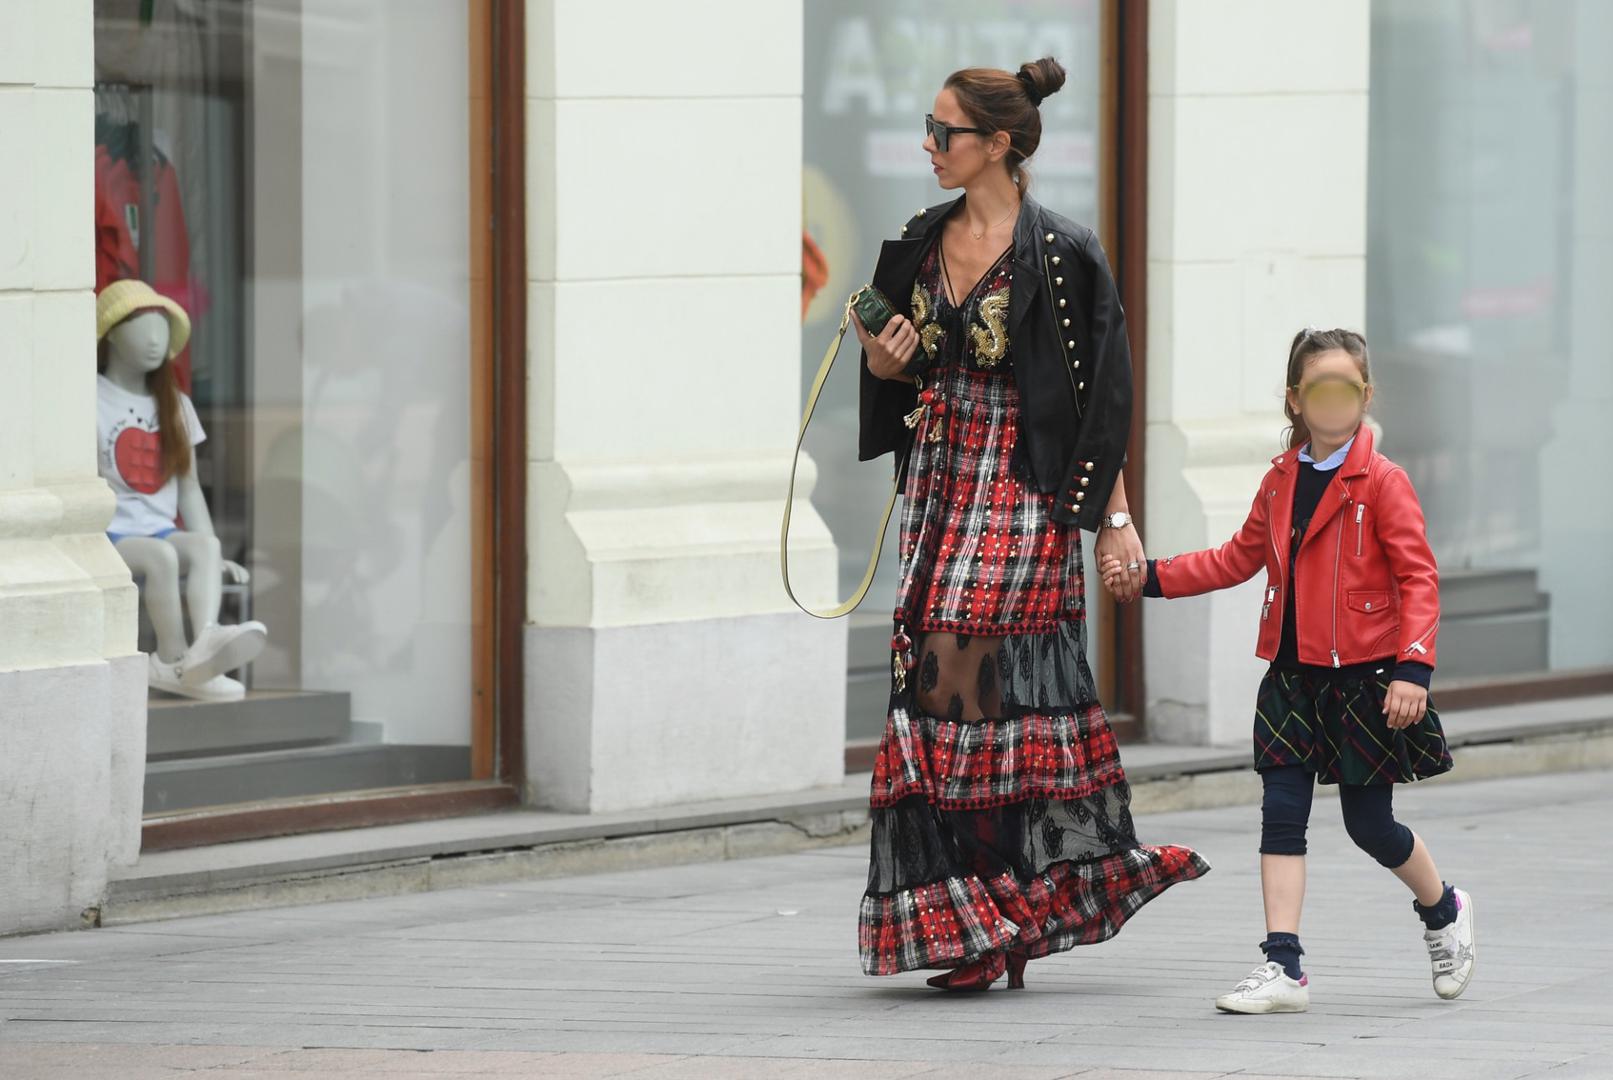 Olja Vori u društvu kćeri prošetala je danas centrom Zagreba i kao i uvijek privukla pažnju svojom modnom kombinacijom koju je uskladila s odjećom svoje kćeri.